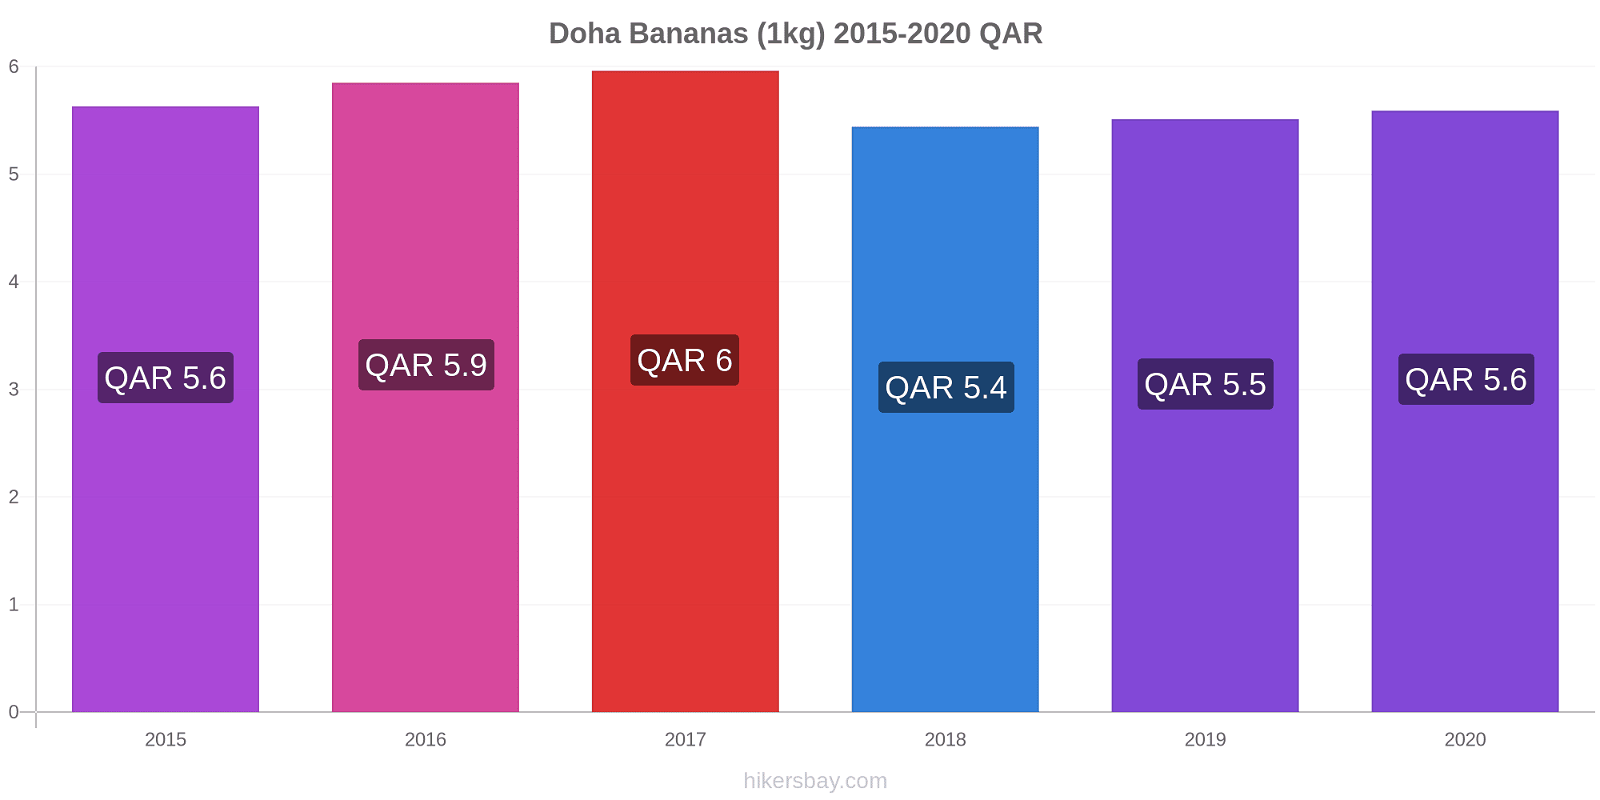 Doha variação de preço Banana (1kg) hikersbay.com